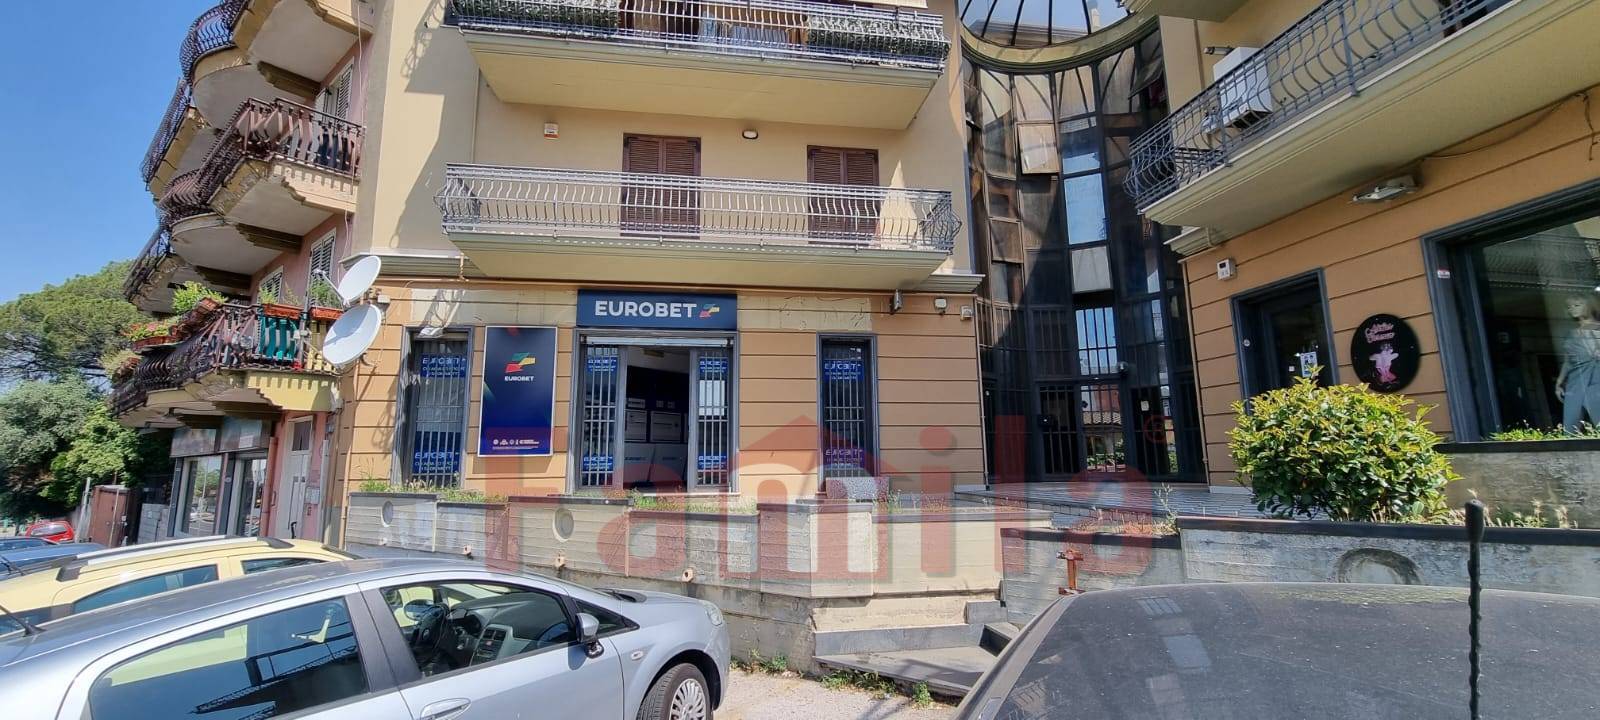 Negozio / Locale in vendita a Sirignano, 9999 locali, prezzo € 248.000 | CambioCasa.it